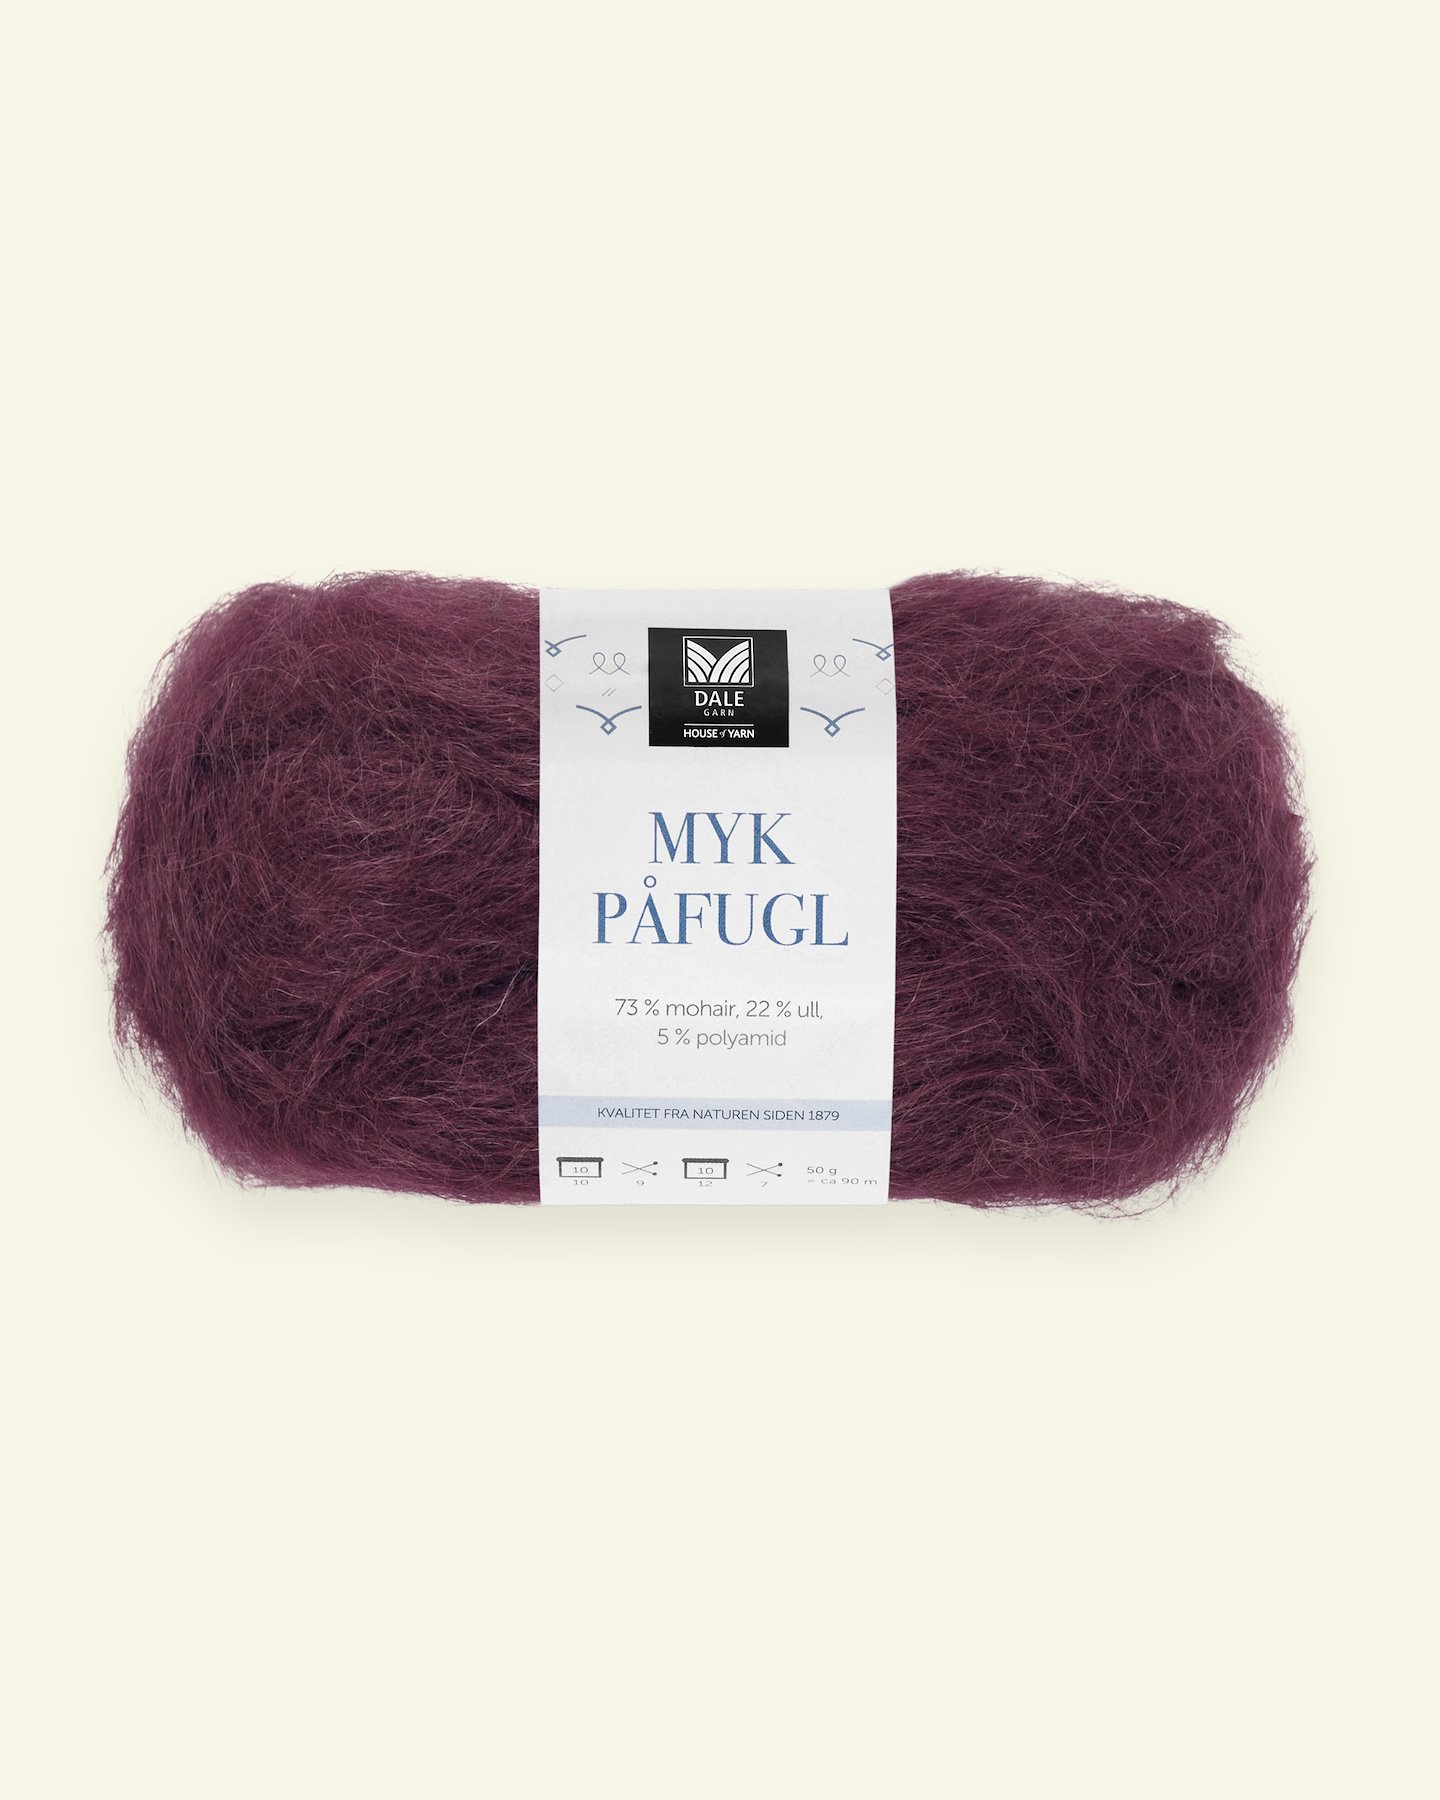 Dale Garn, mohair/wool yarn "Myk Påfugl", bordeaux 90000259_pack